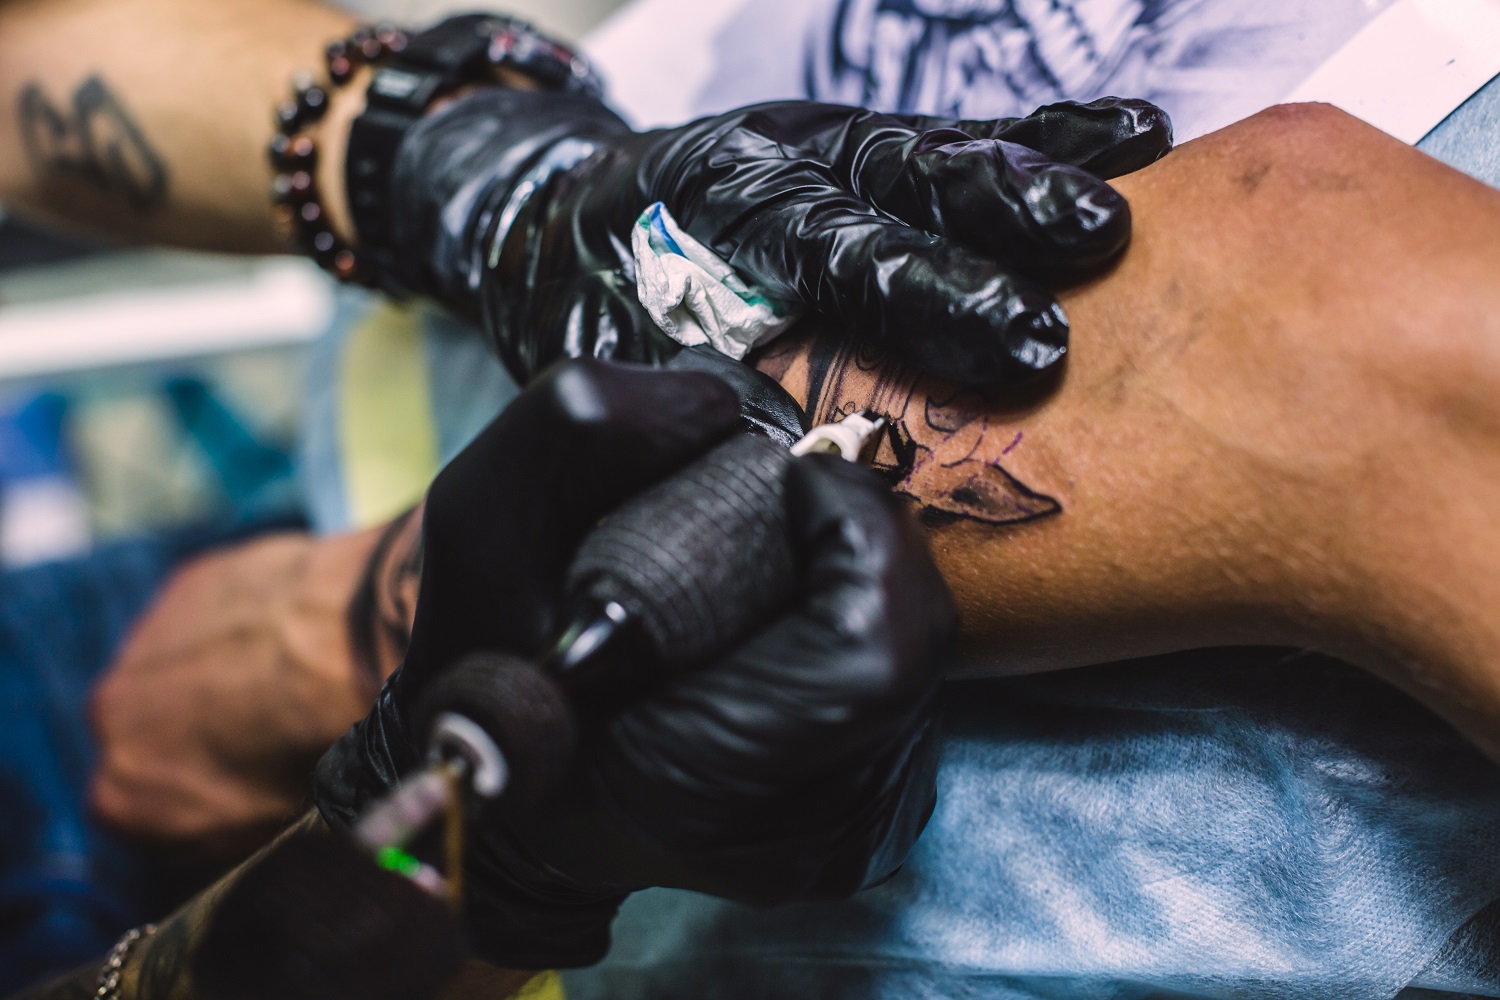 Dónde duelen más los tatuajes y consejos para aliviar el dolor.